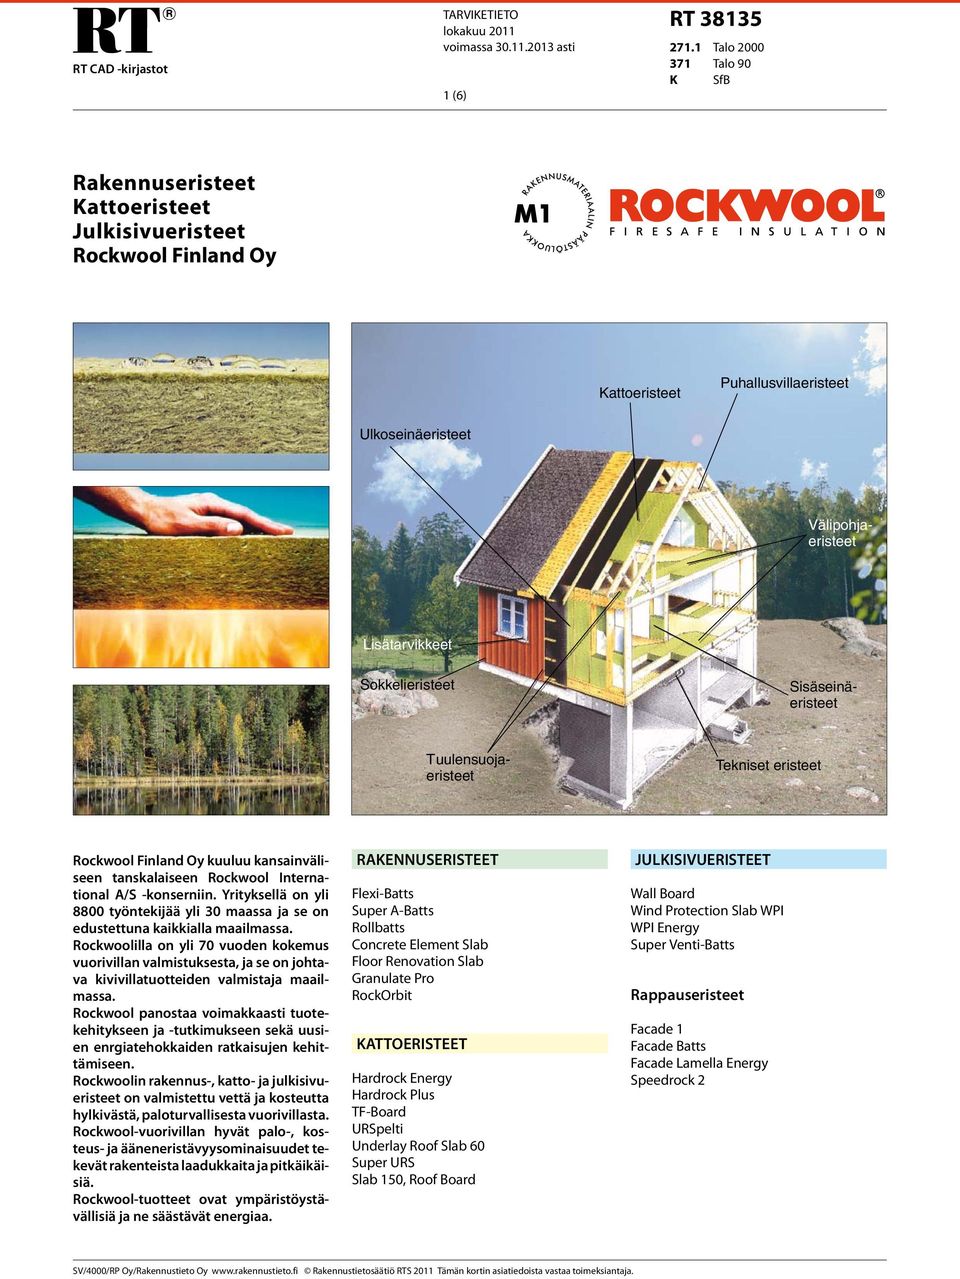 Välipohjaeristeet Sisäseinäeristeet Tuulensuojaeristeet Tekniset eristeet Rockwool Finland Oy kuuluu kansainväliseen tanskalaiseen Rockwool International A/S -konserniin.